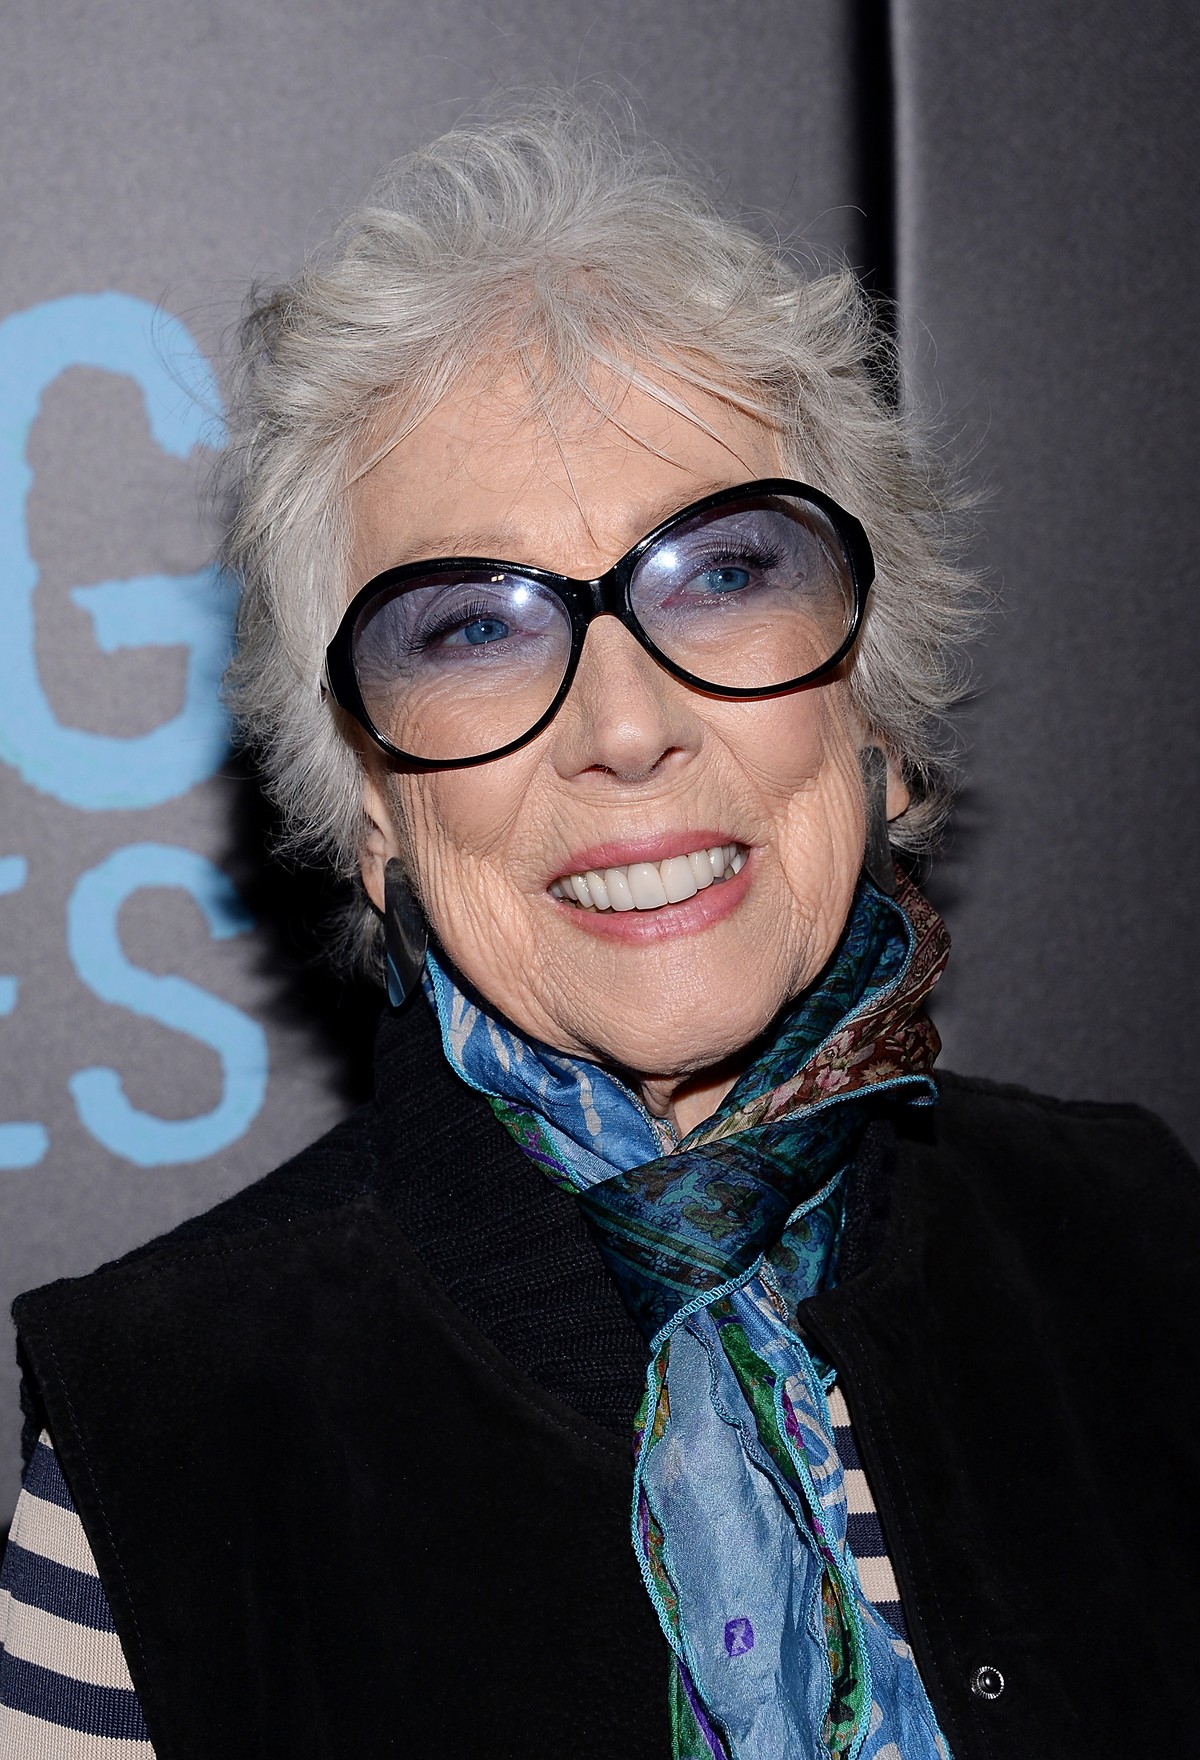 Margaret Keane, artista interpretada no filme ‘Large Eyes’, morre aos 94 anos |  Pop & Arte